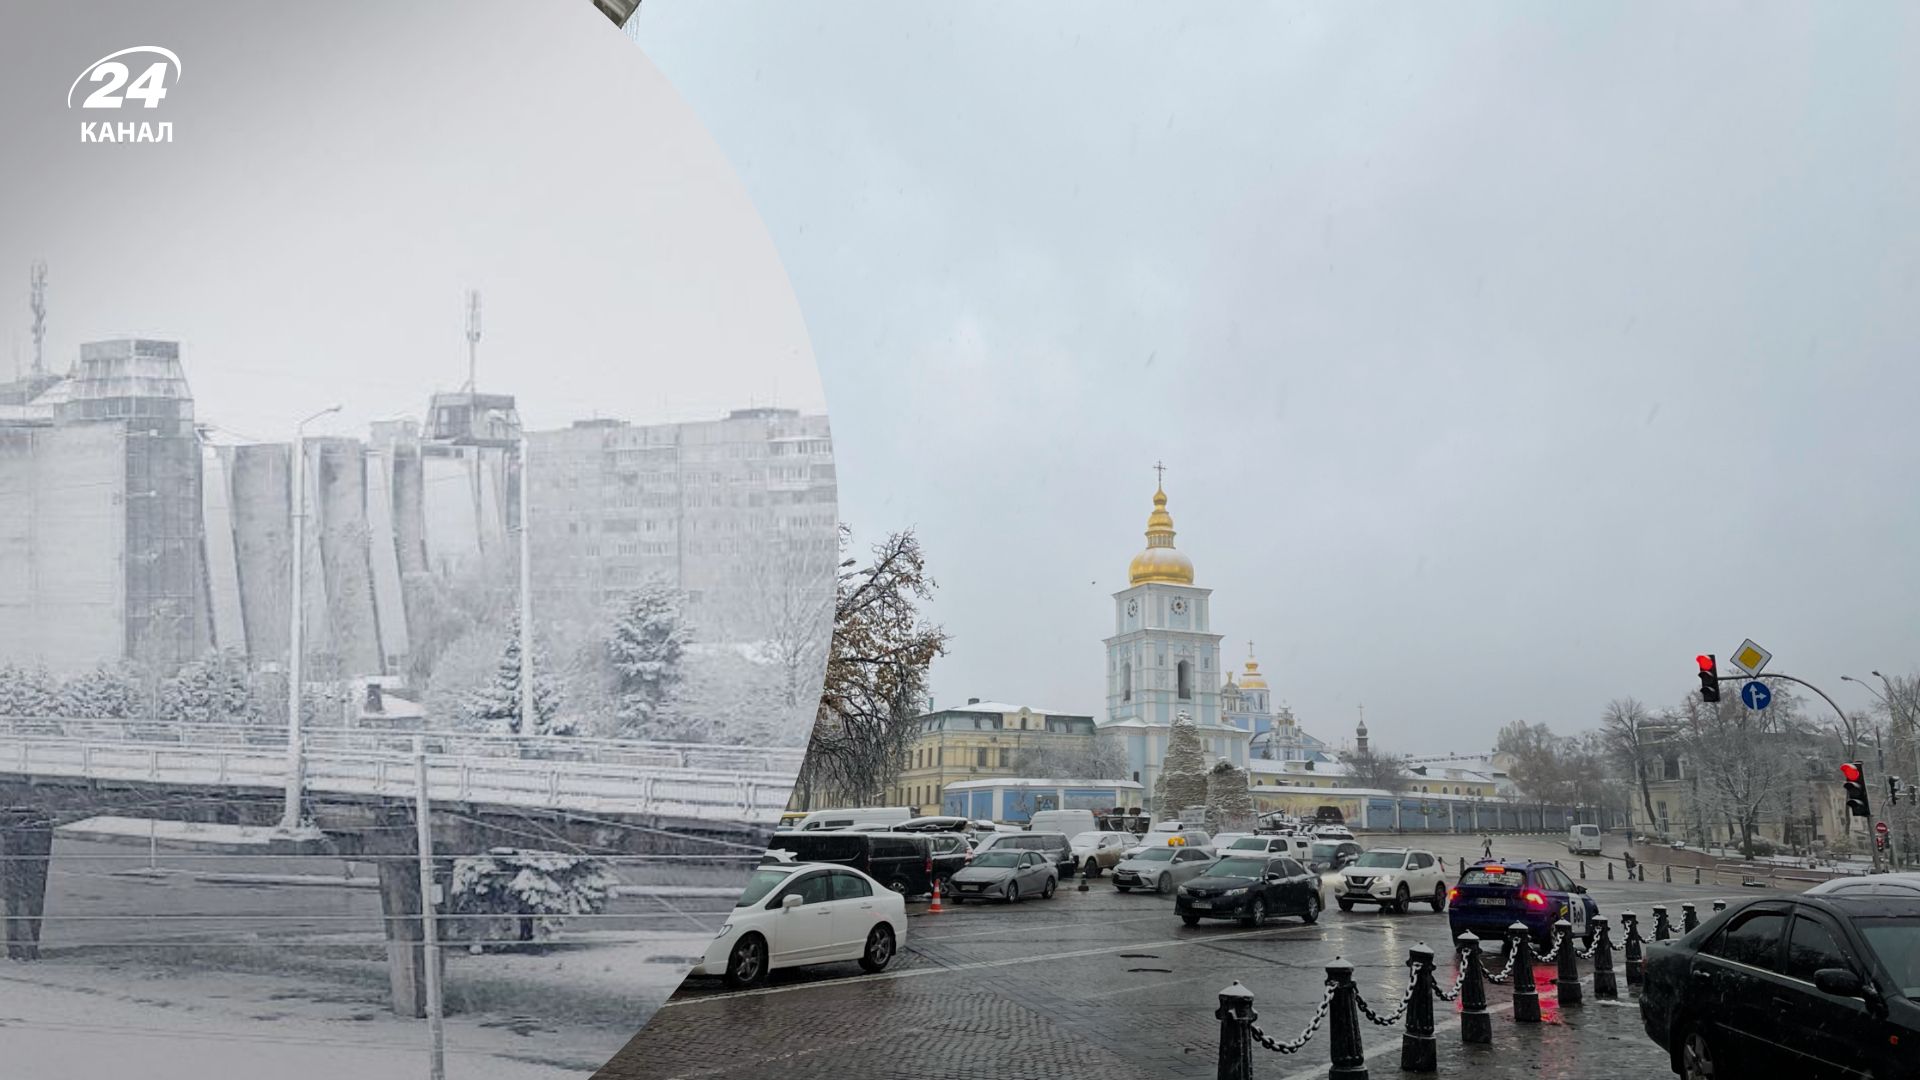 Перший сніг випав у Києві та Львові - фото та відео зі столиці, як виглядають міста